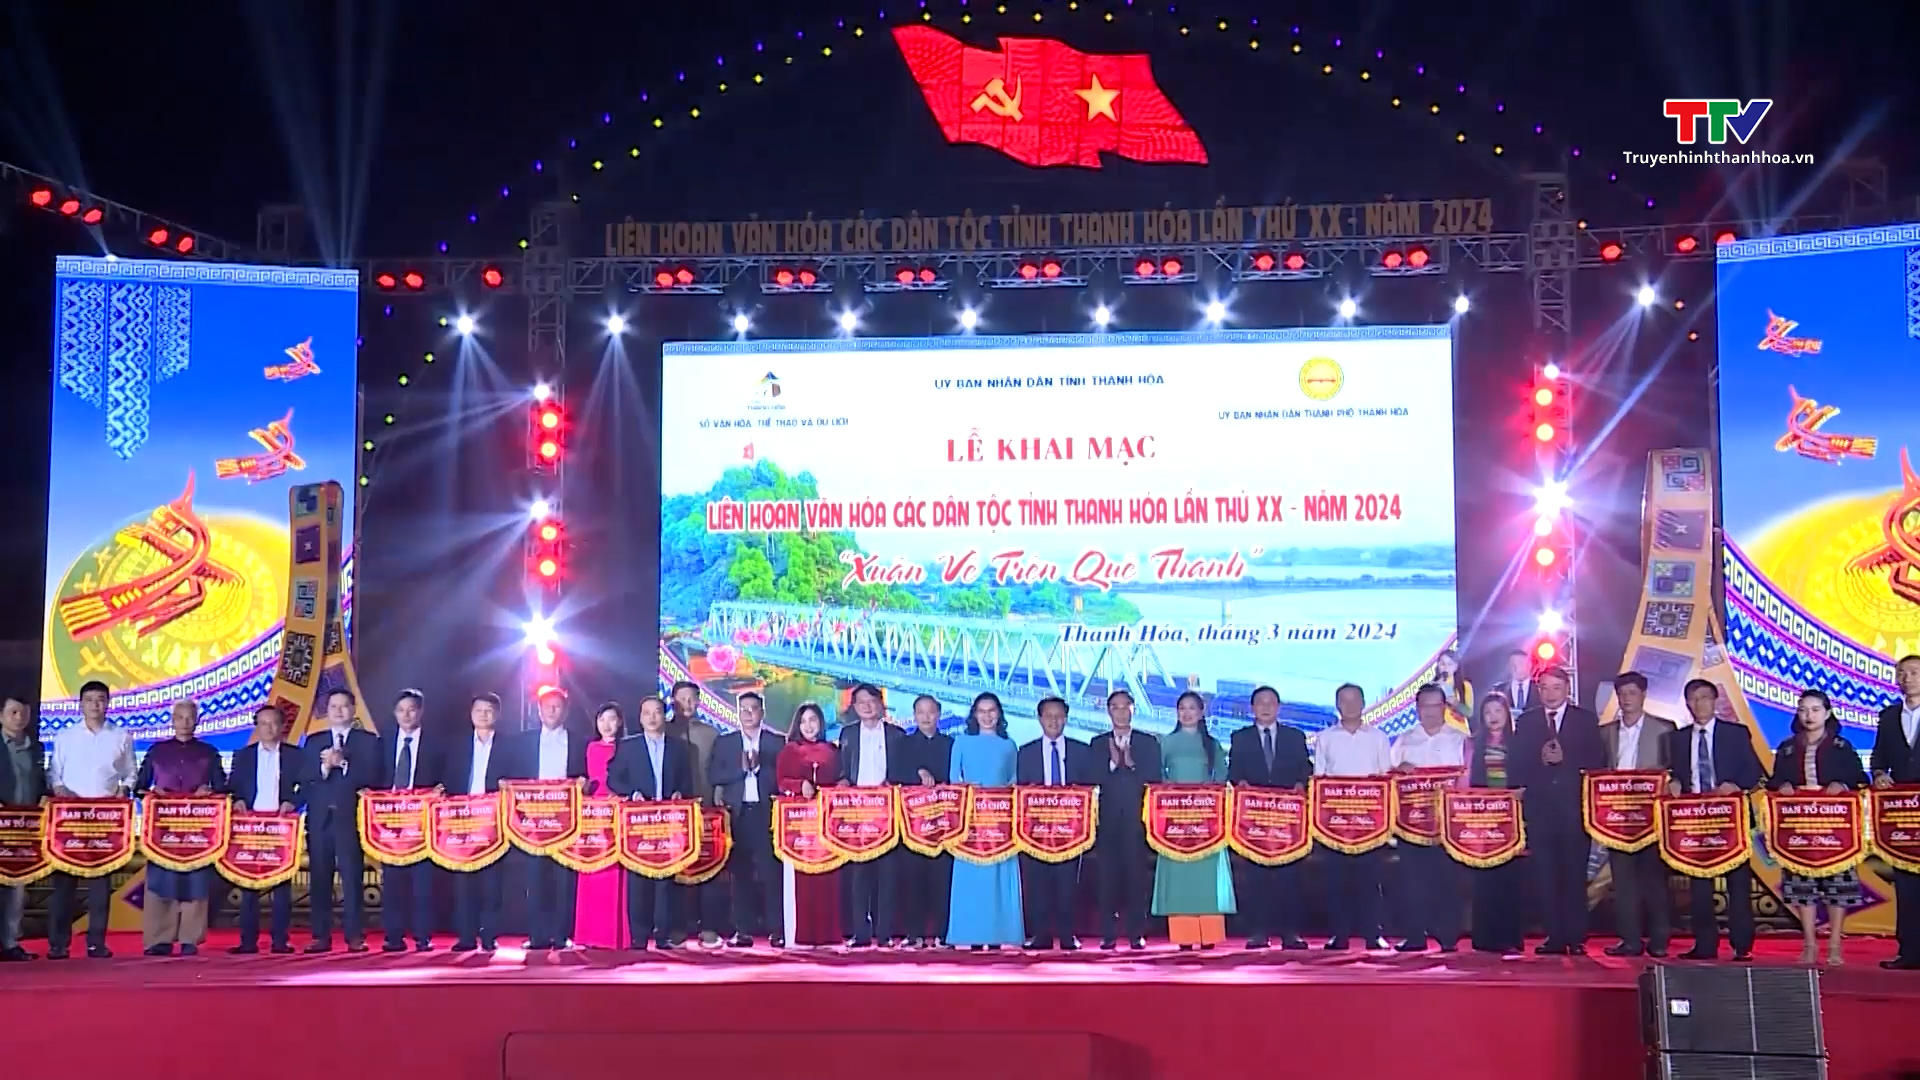 Liên hoan Văn hóa dân tộc lần thứ XX và trình diễn trang phục truyền thống các dân tộc tỉnh Thanh Hóa- Ảnh 2.